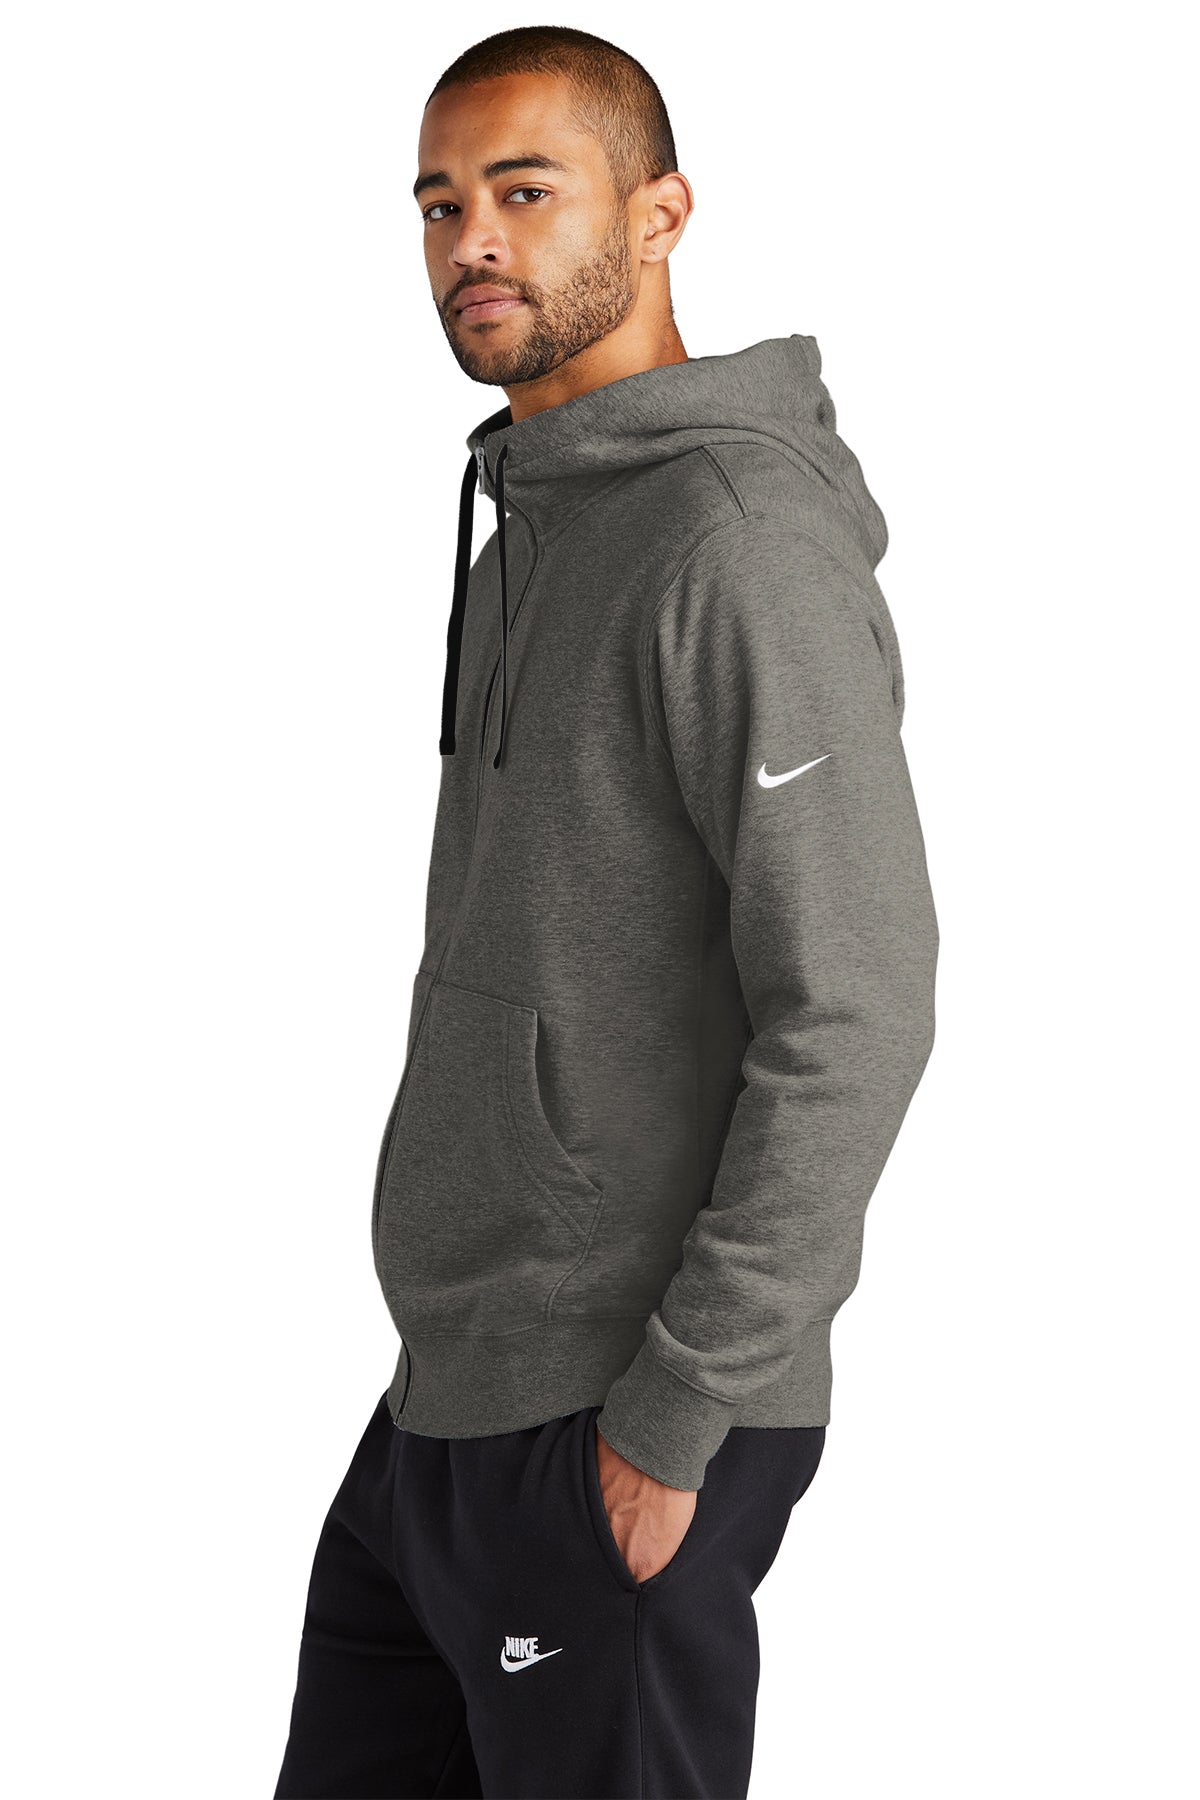 Branded Swoosh Hoodie Nike Full-Zip Club Sleeve Fleece Charcoal